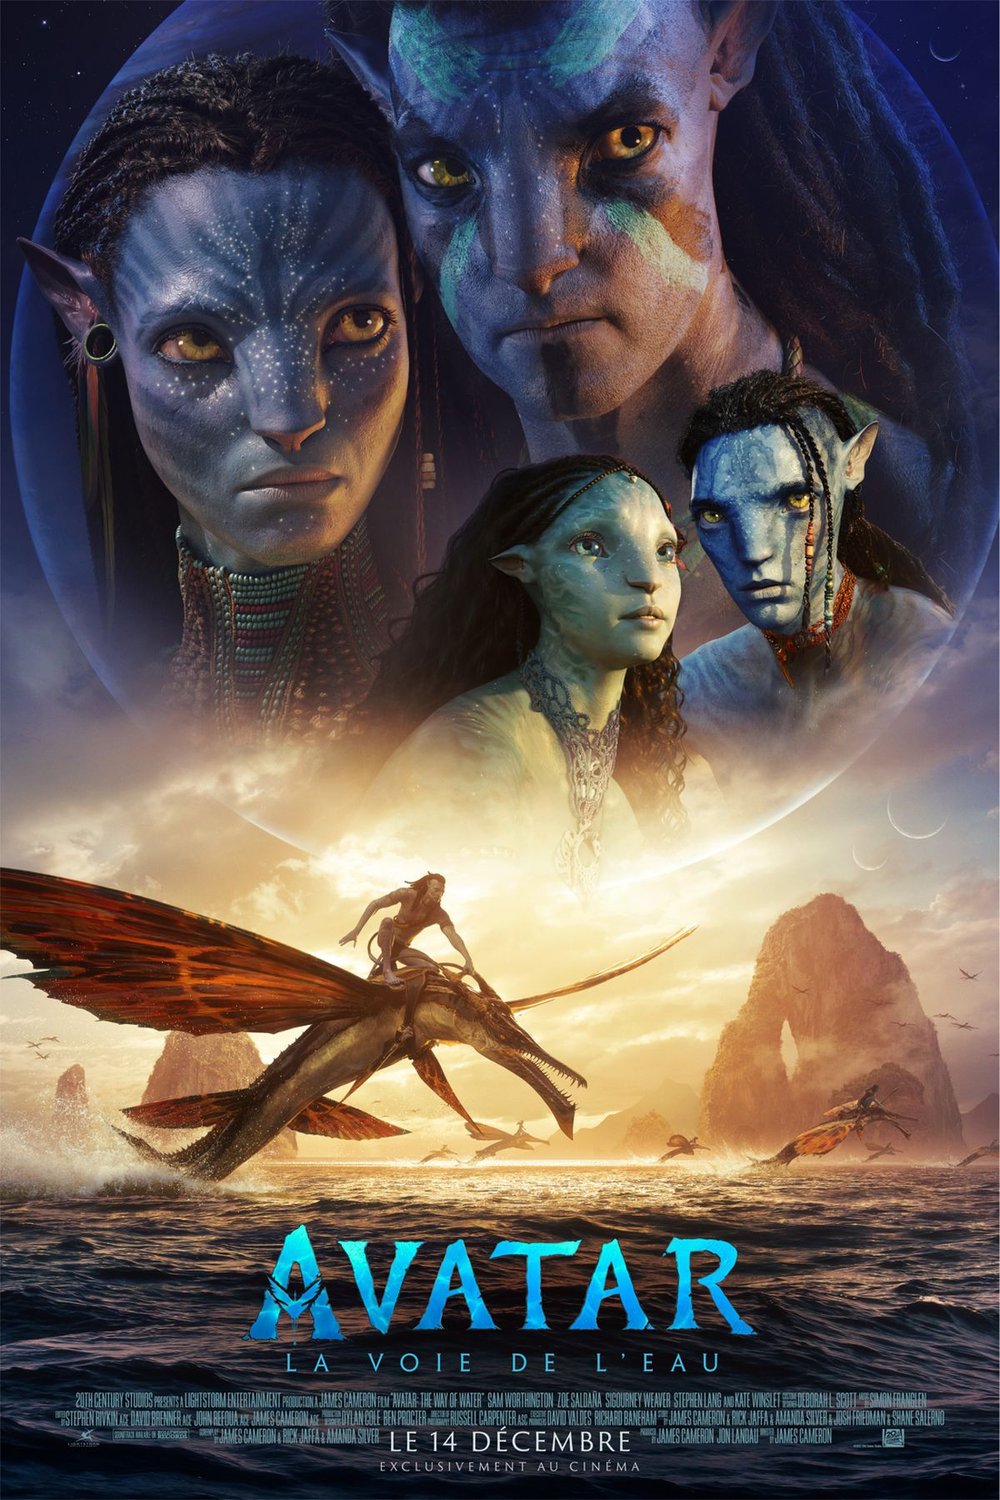 Poster of the movie Avatar: La voie de l'eau